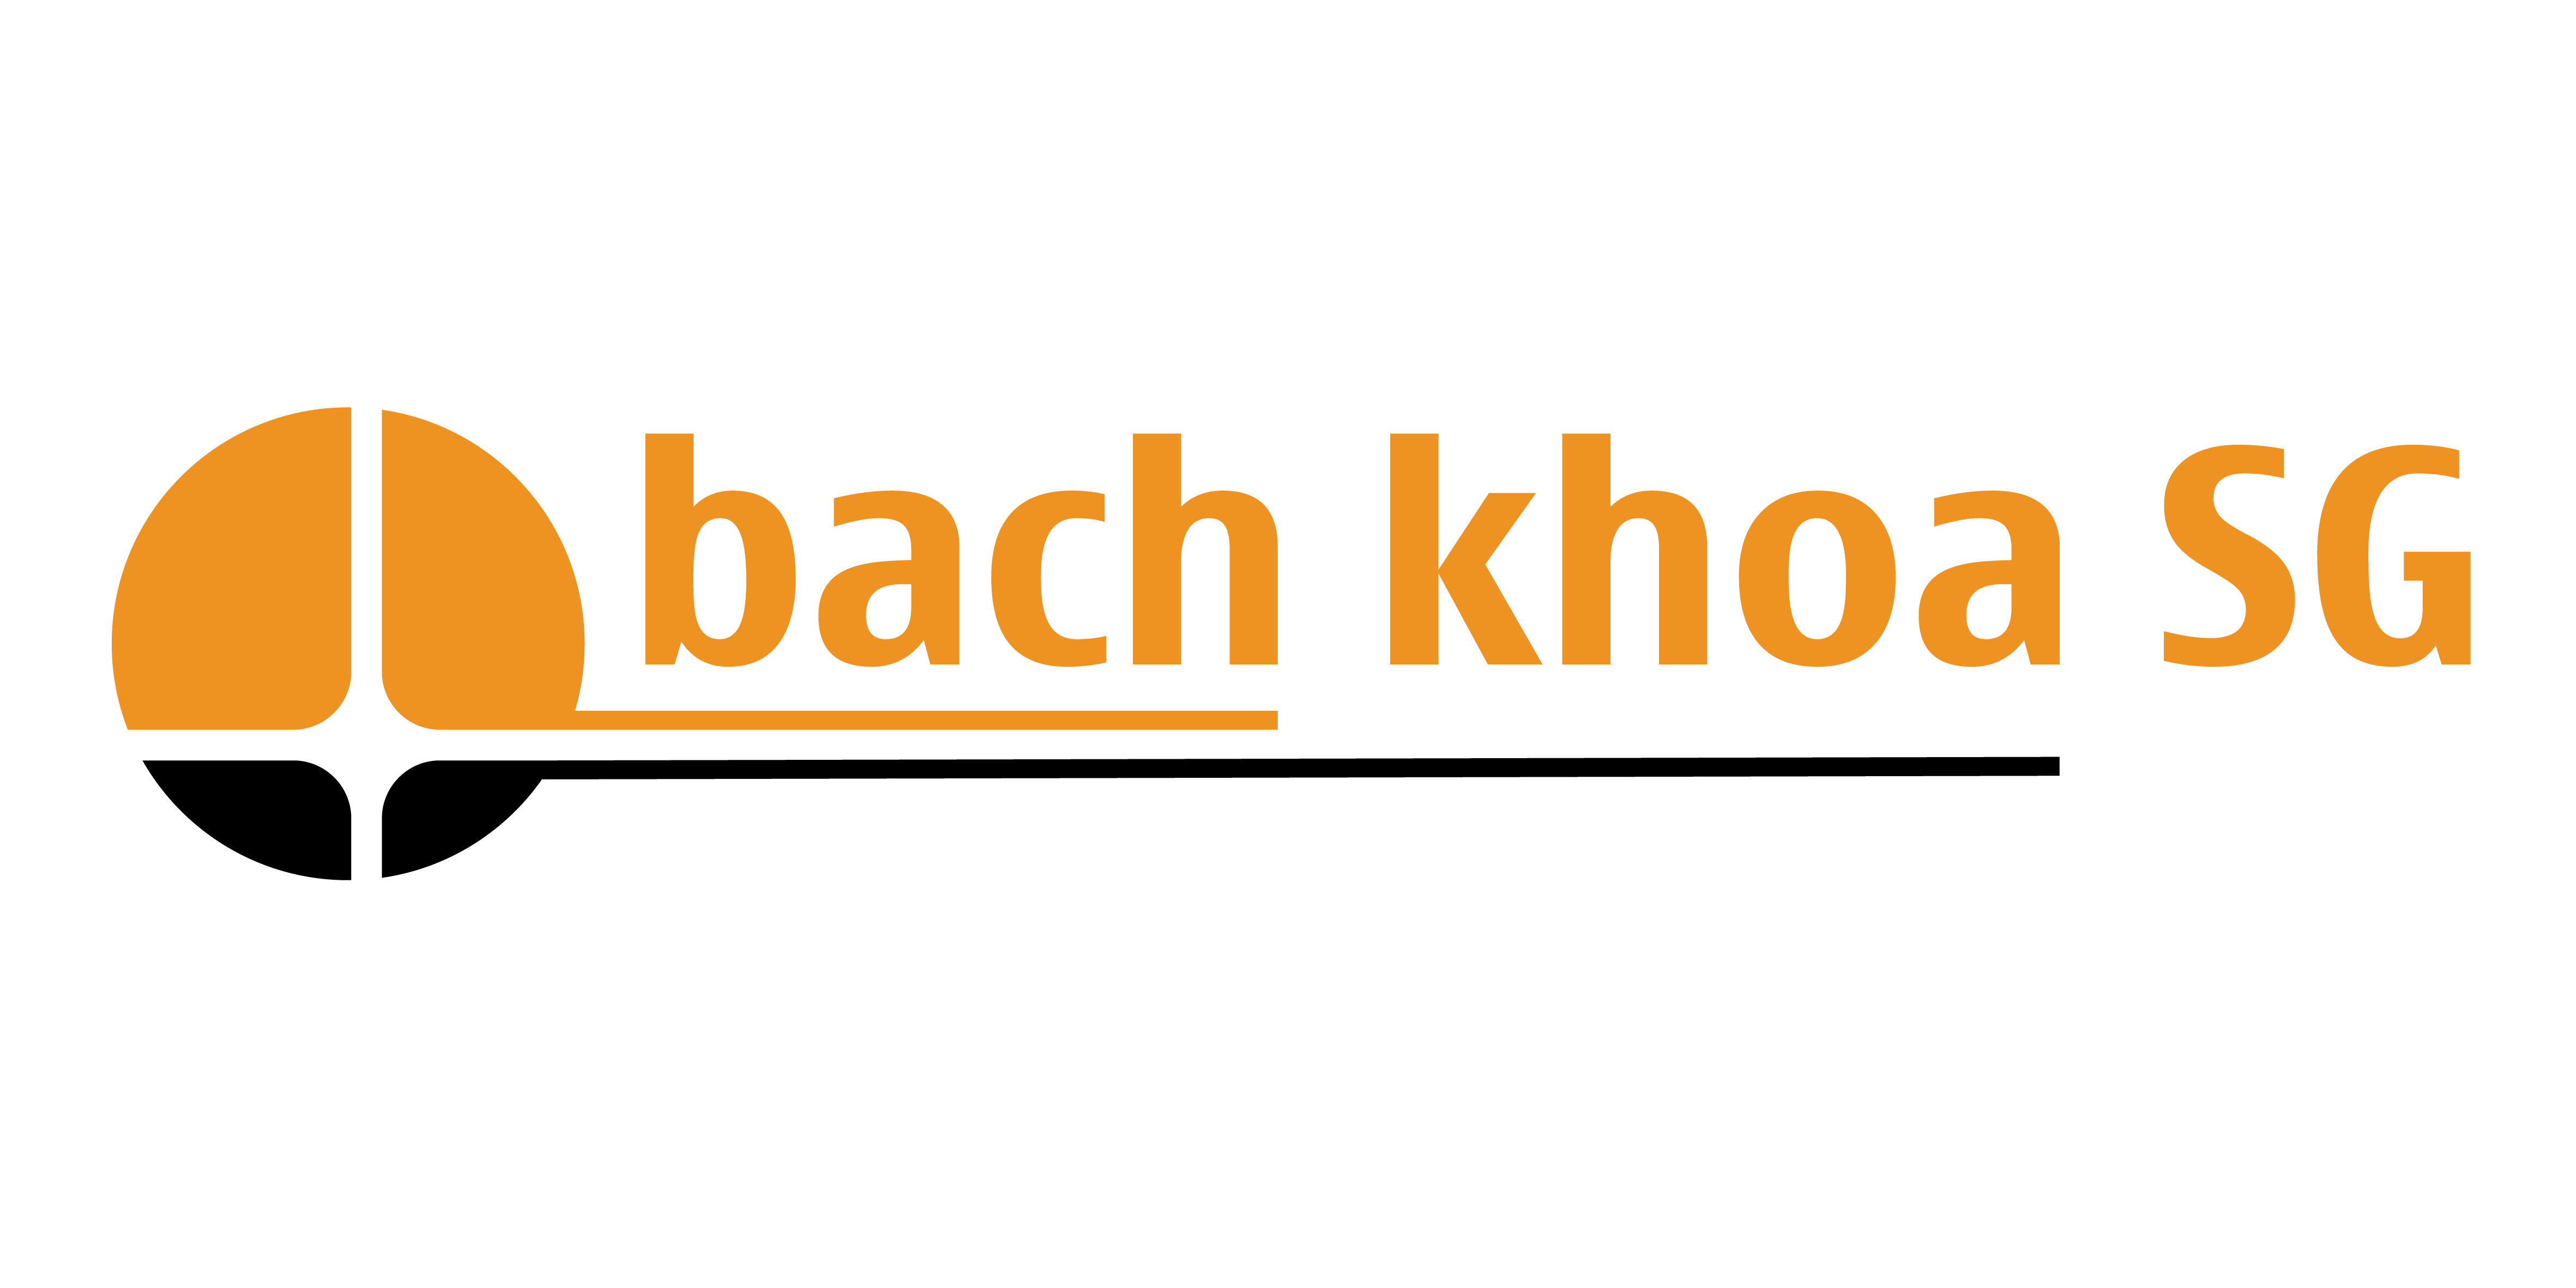 BachkhoaSG